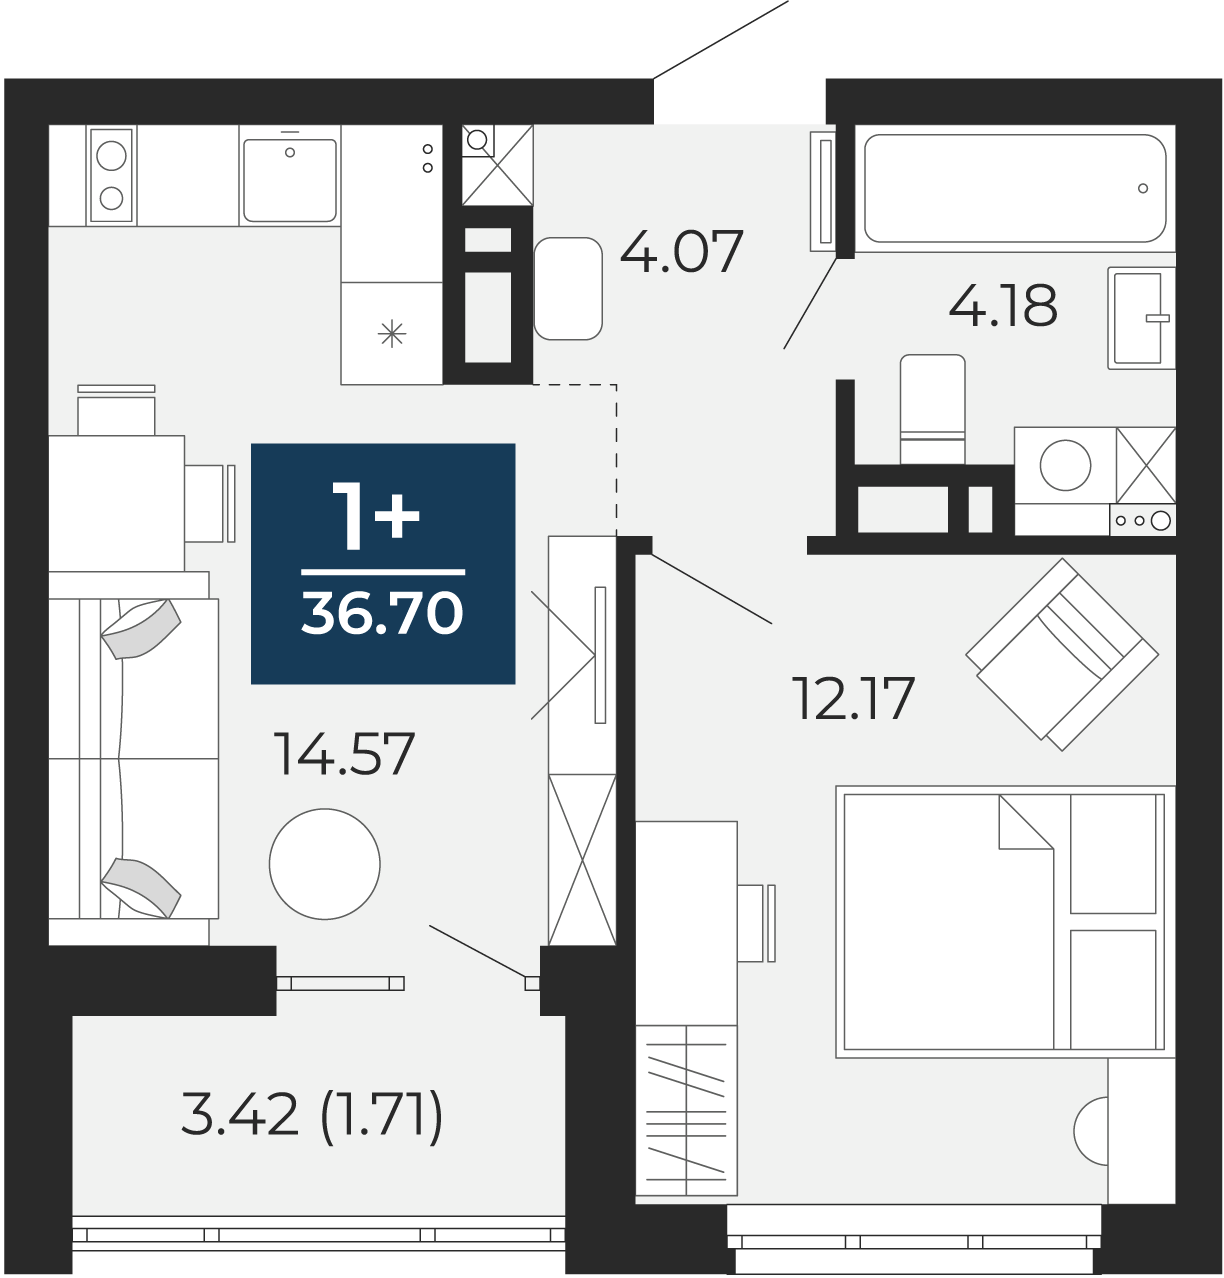 Квартира № 80, 1-комнатная, 36.7 кв. м, 11 этаж